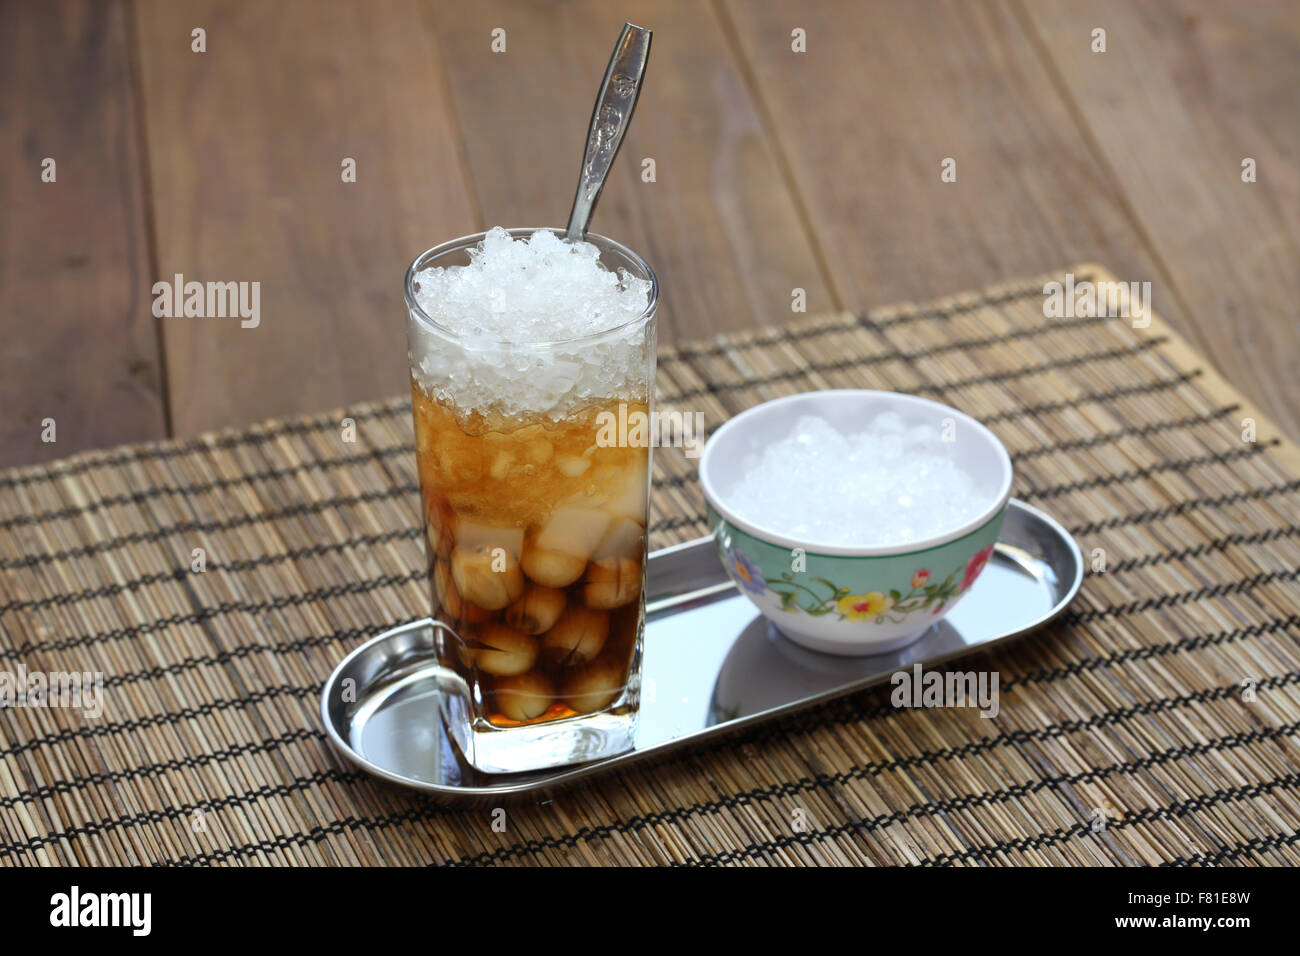 Che è un vietnamita dessert zuppa, di solito servito in un bicchiere con ghiaccio e mangiato con un cucchiaio. Foto Stock